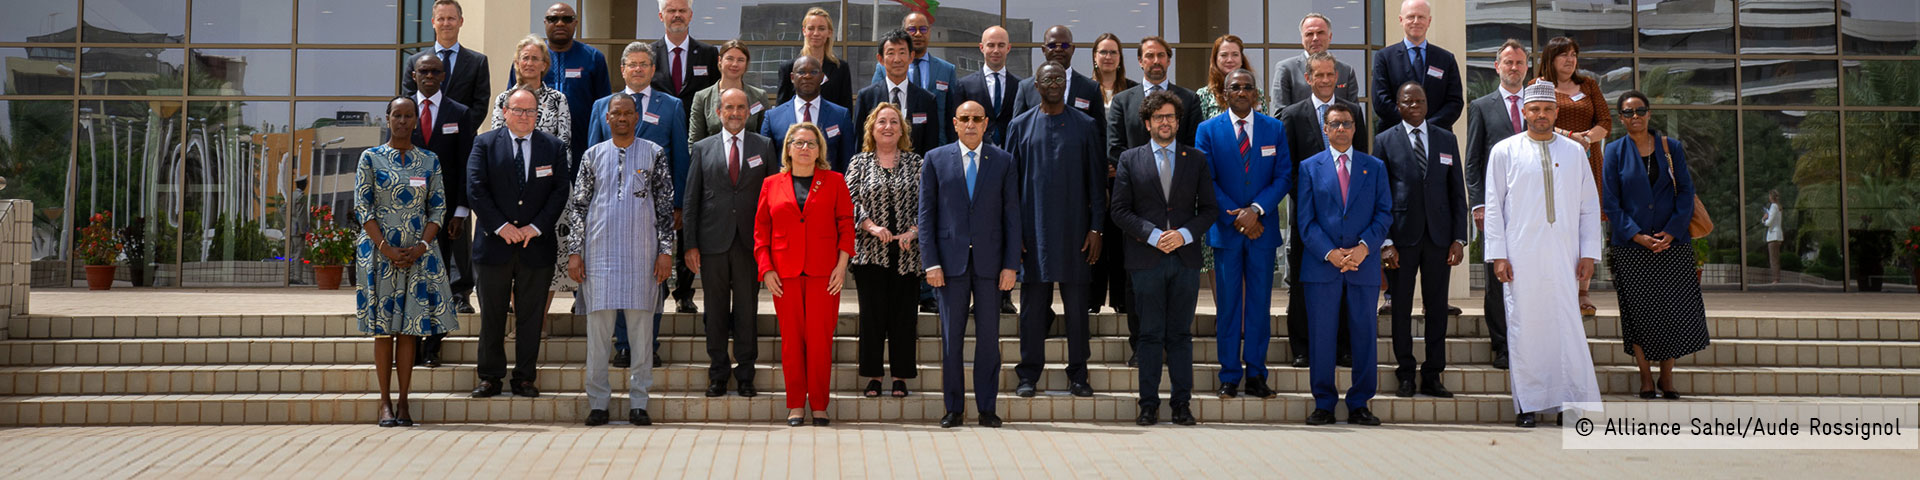 Sahel-Allianz-Mitglieder stehen mit Svenja Schulze, dem mauretanischen Staatspräsidenten und dem mauretanischen Wirtschaftsminister für ein Foto zusammen.